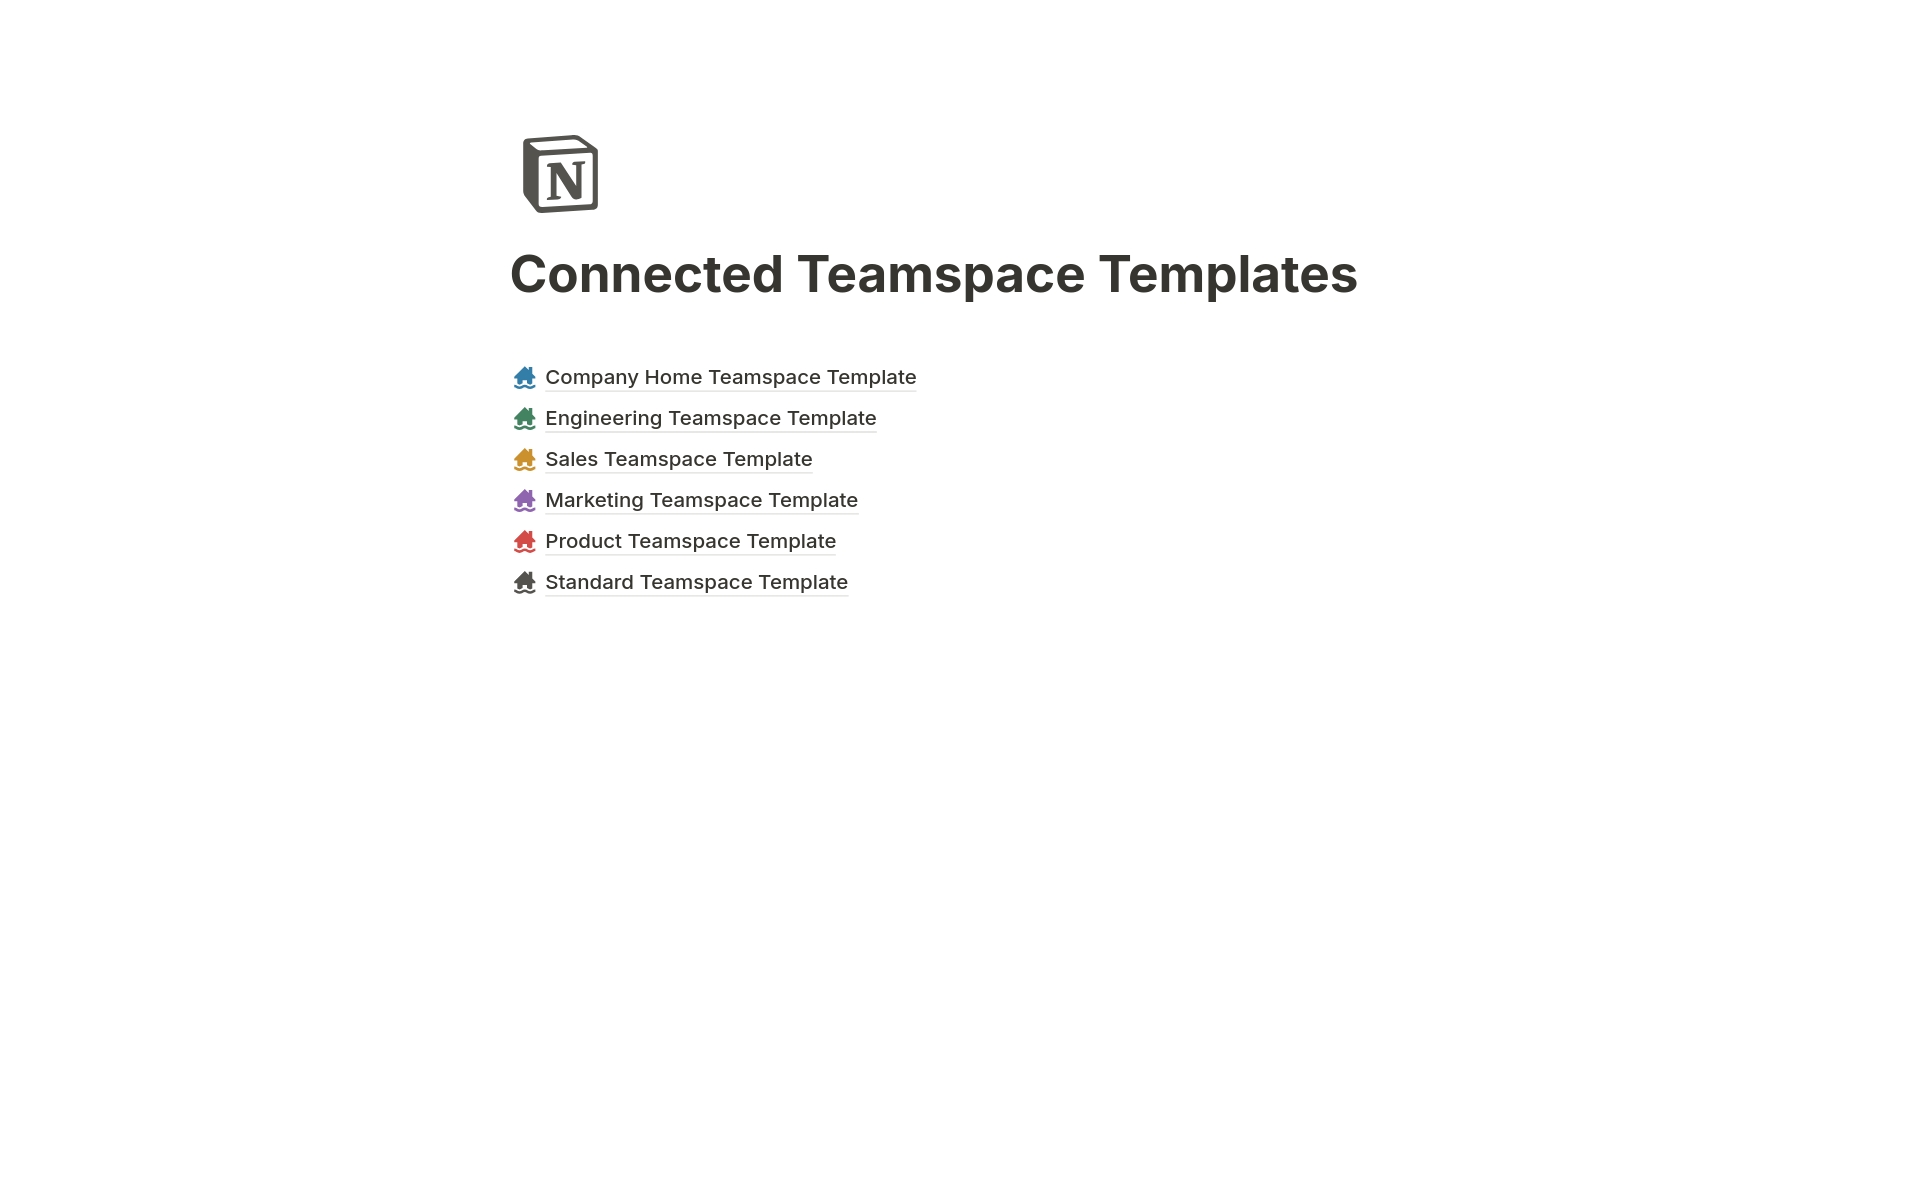 Vista previa de una plantilla para Connected Teamspaces